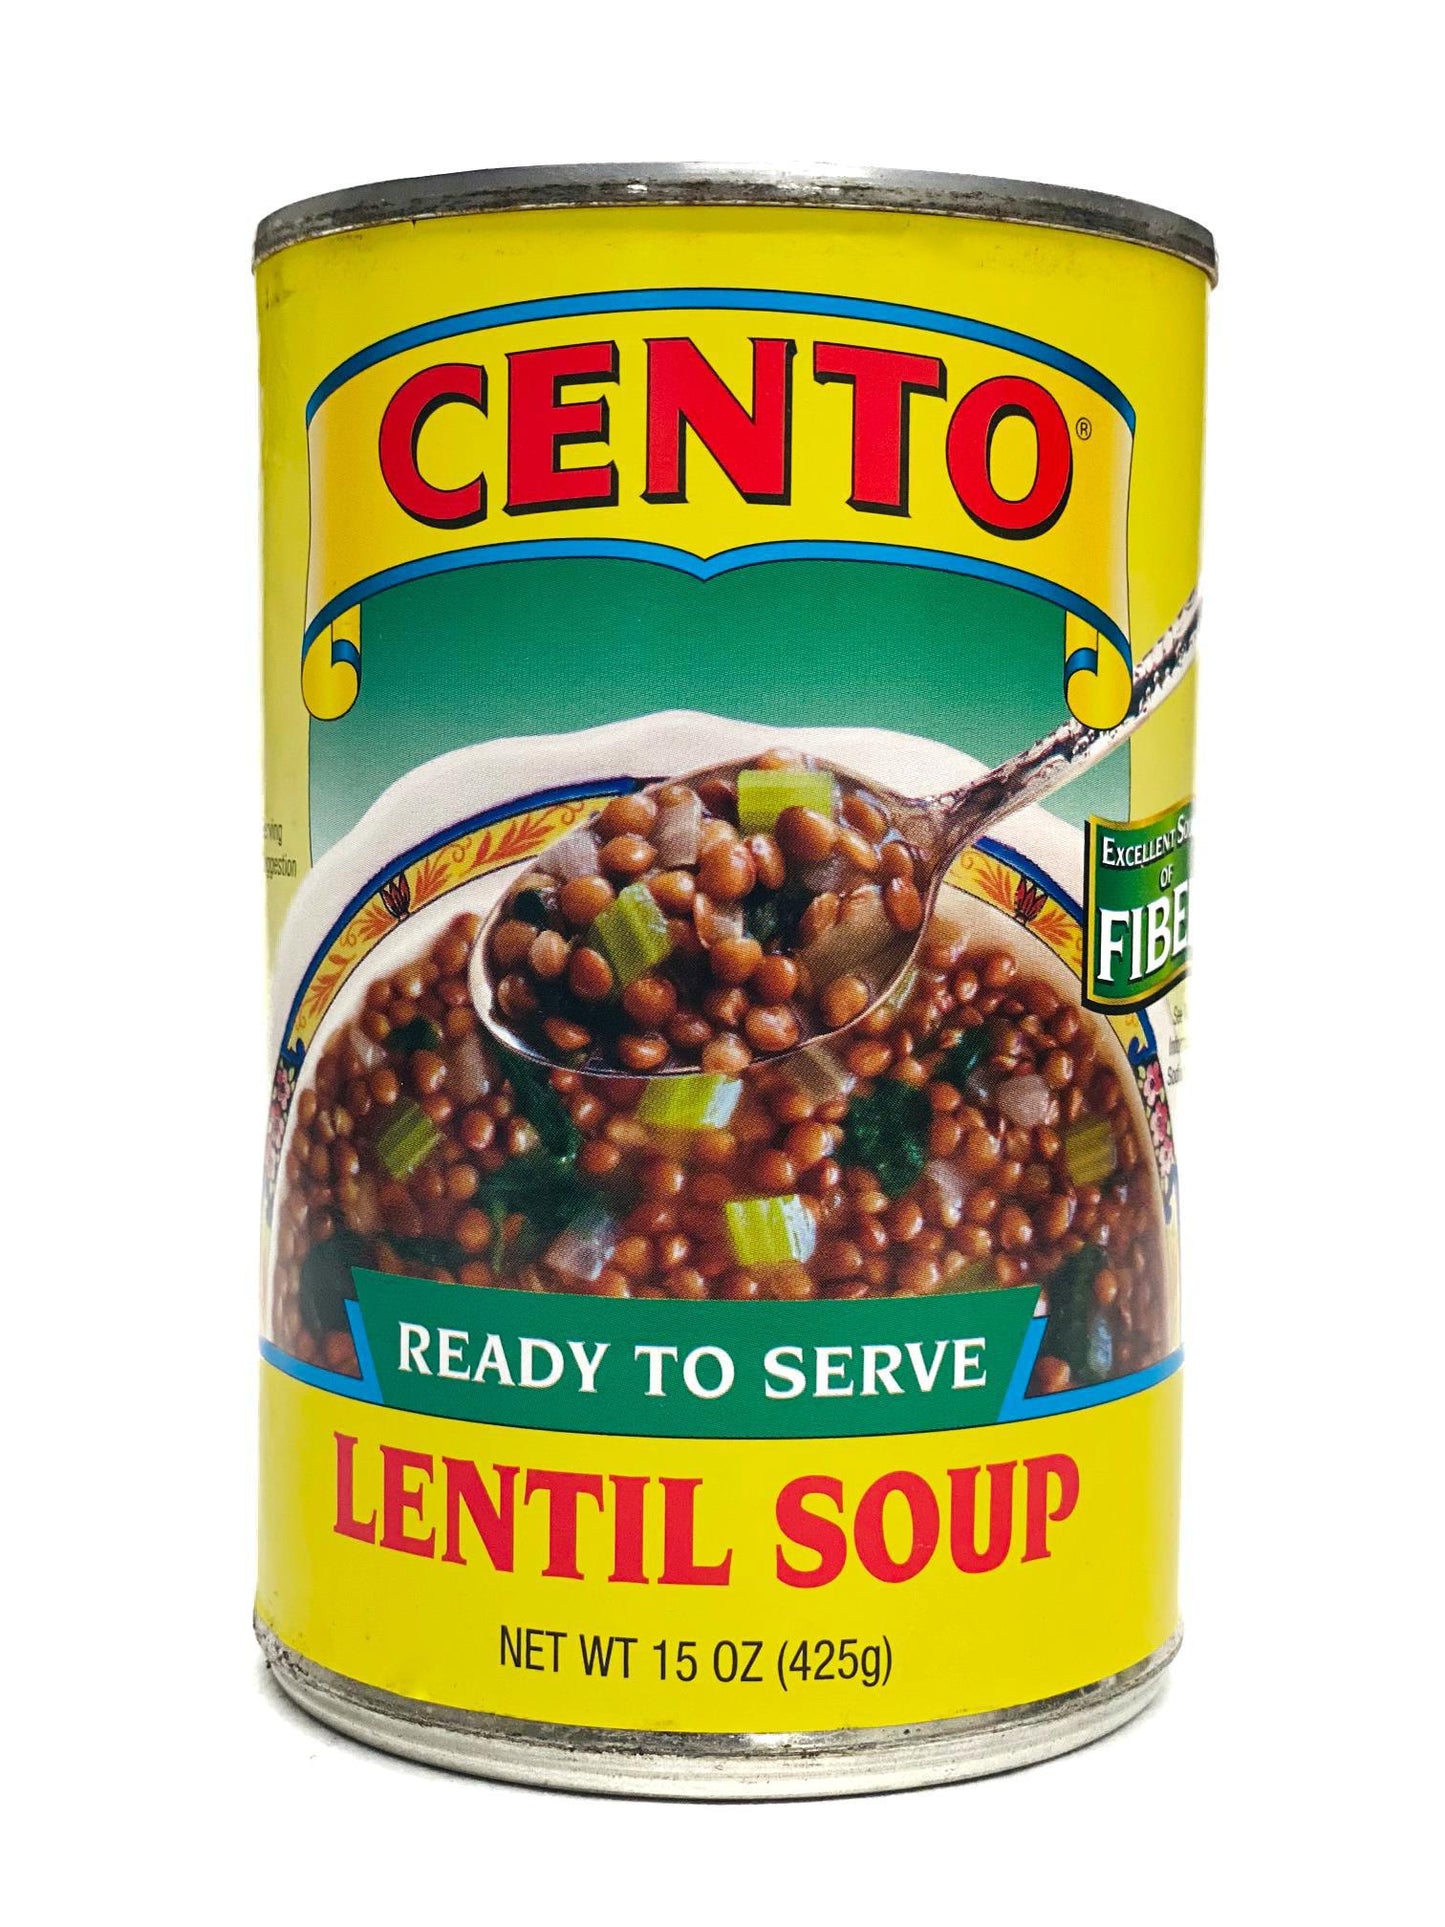 Cento Ready To Serve Lentil Soup, 15 oz